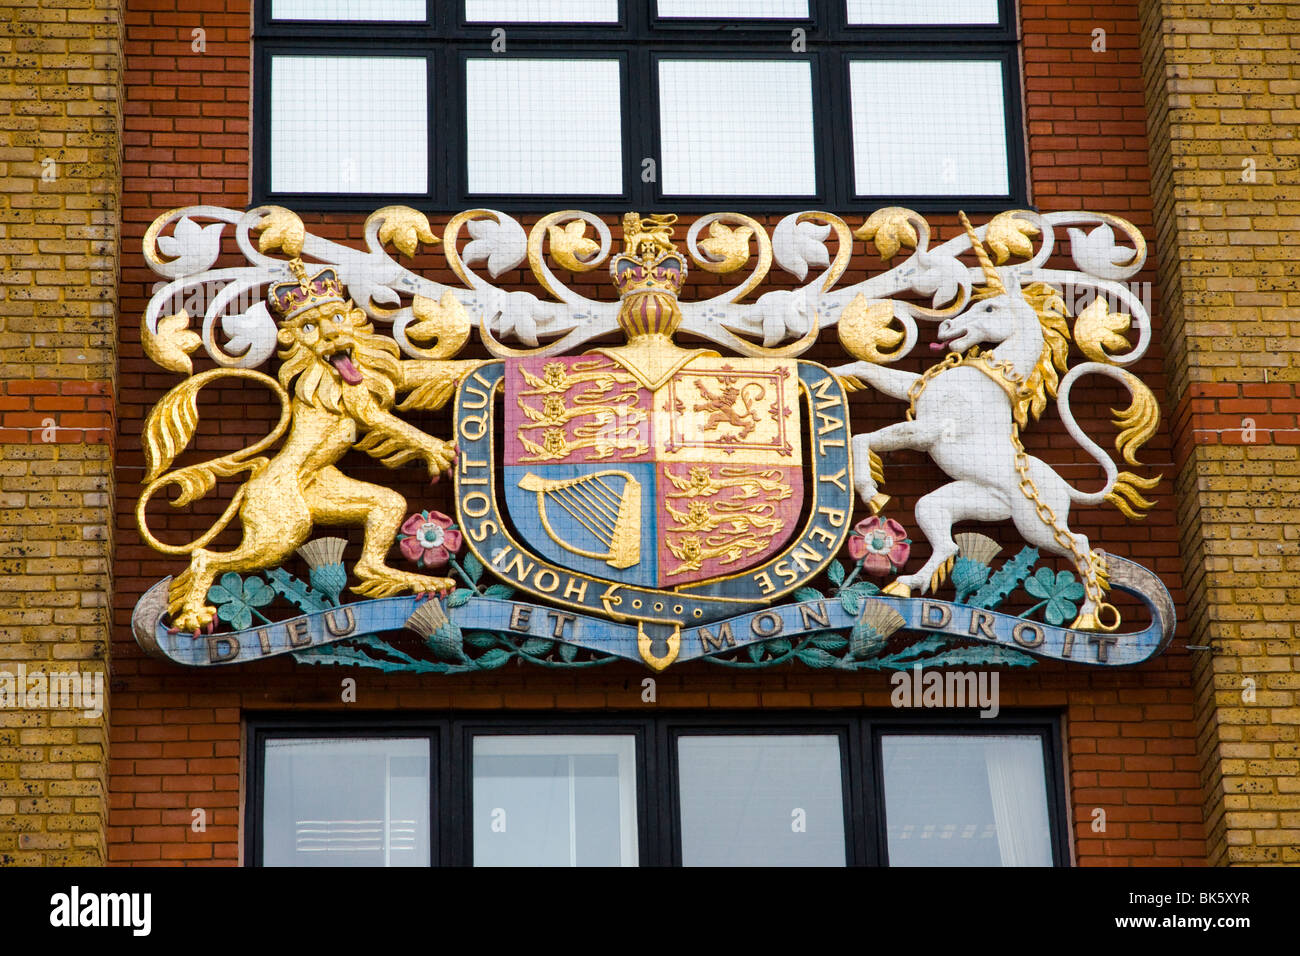 Crown Court Sign / Coat of Arms / Dieu Et Mon Droit, St. Albans, UK Stock Photo